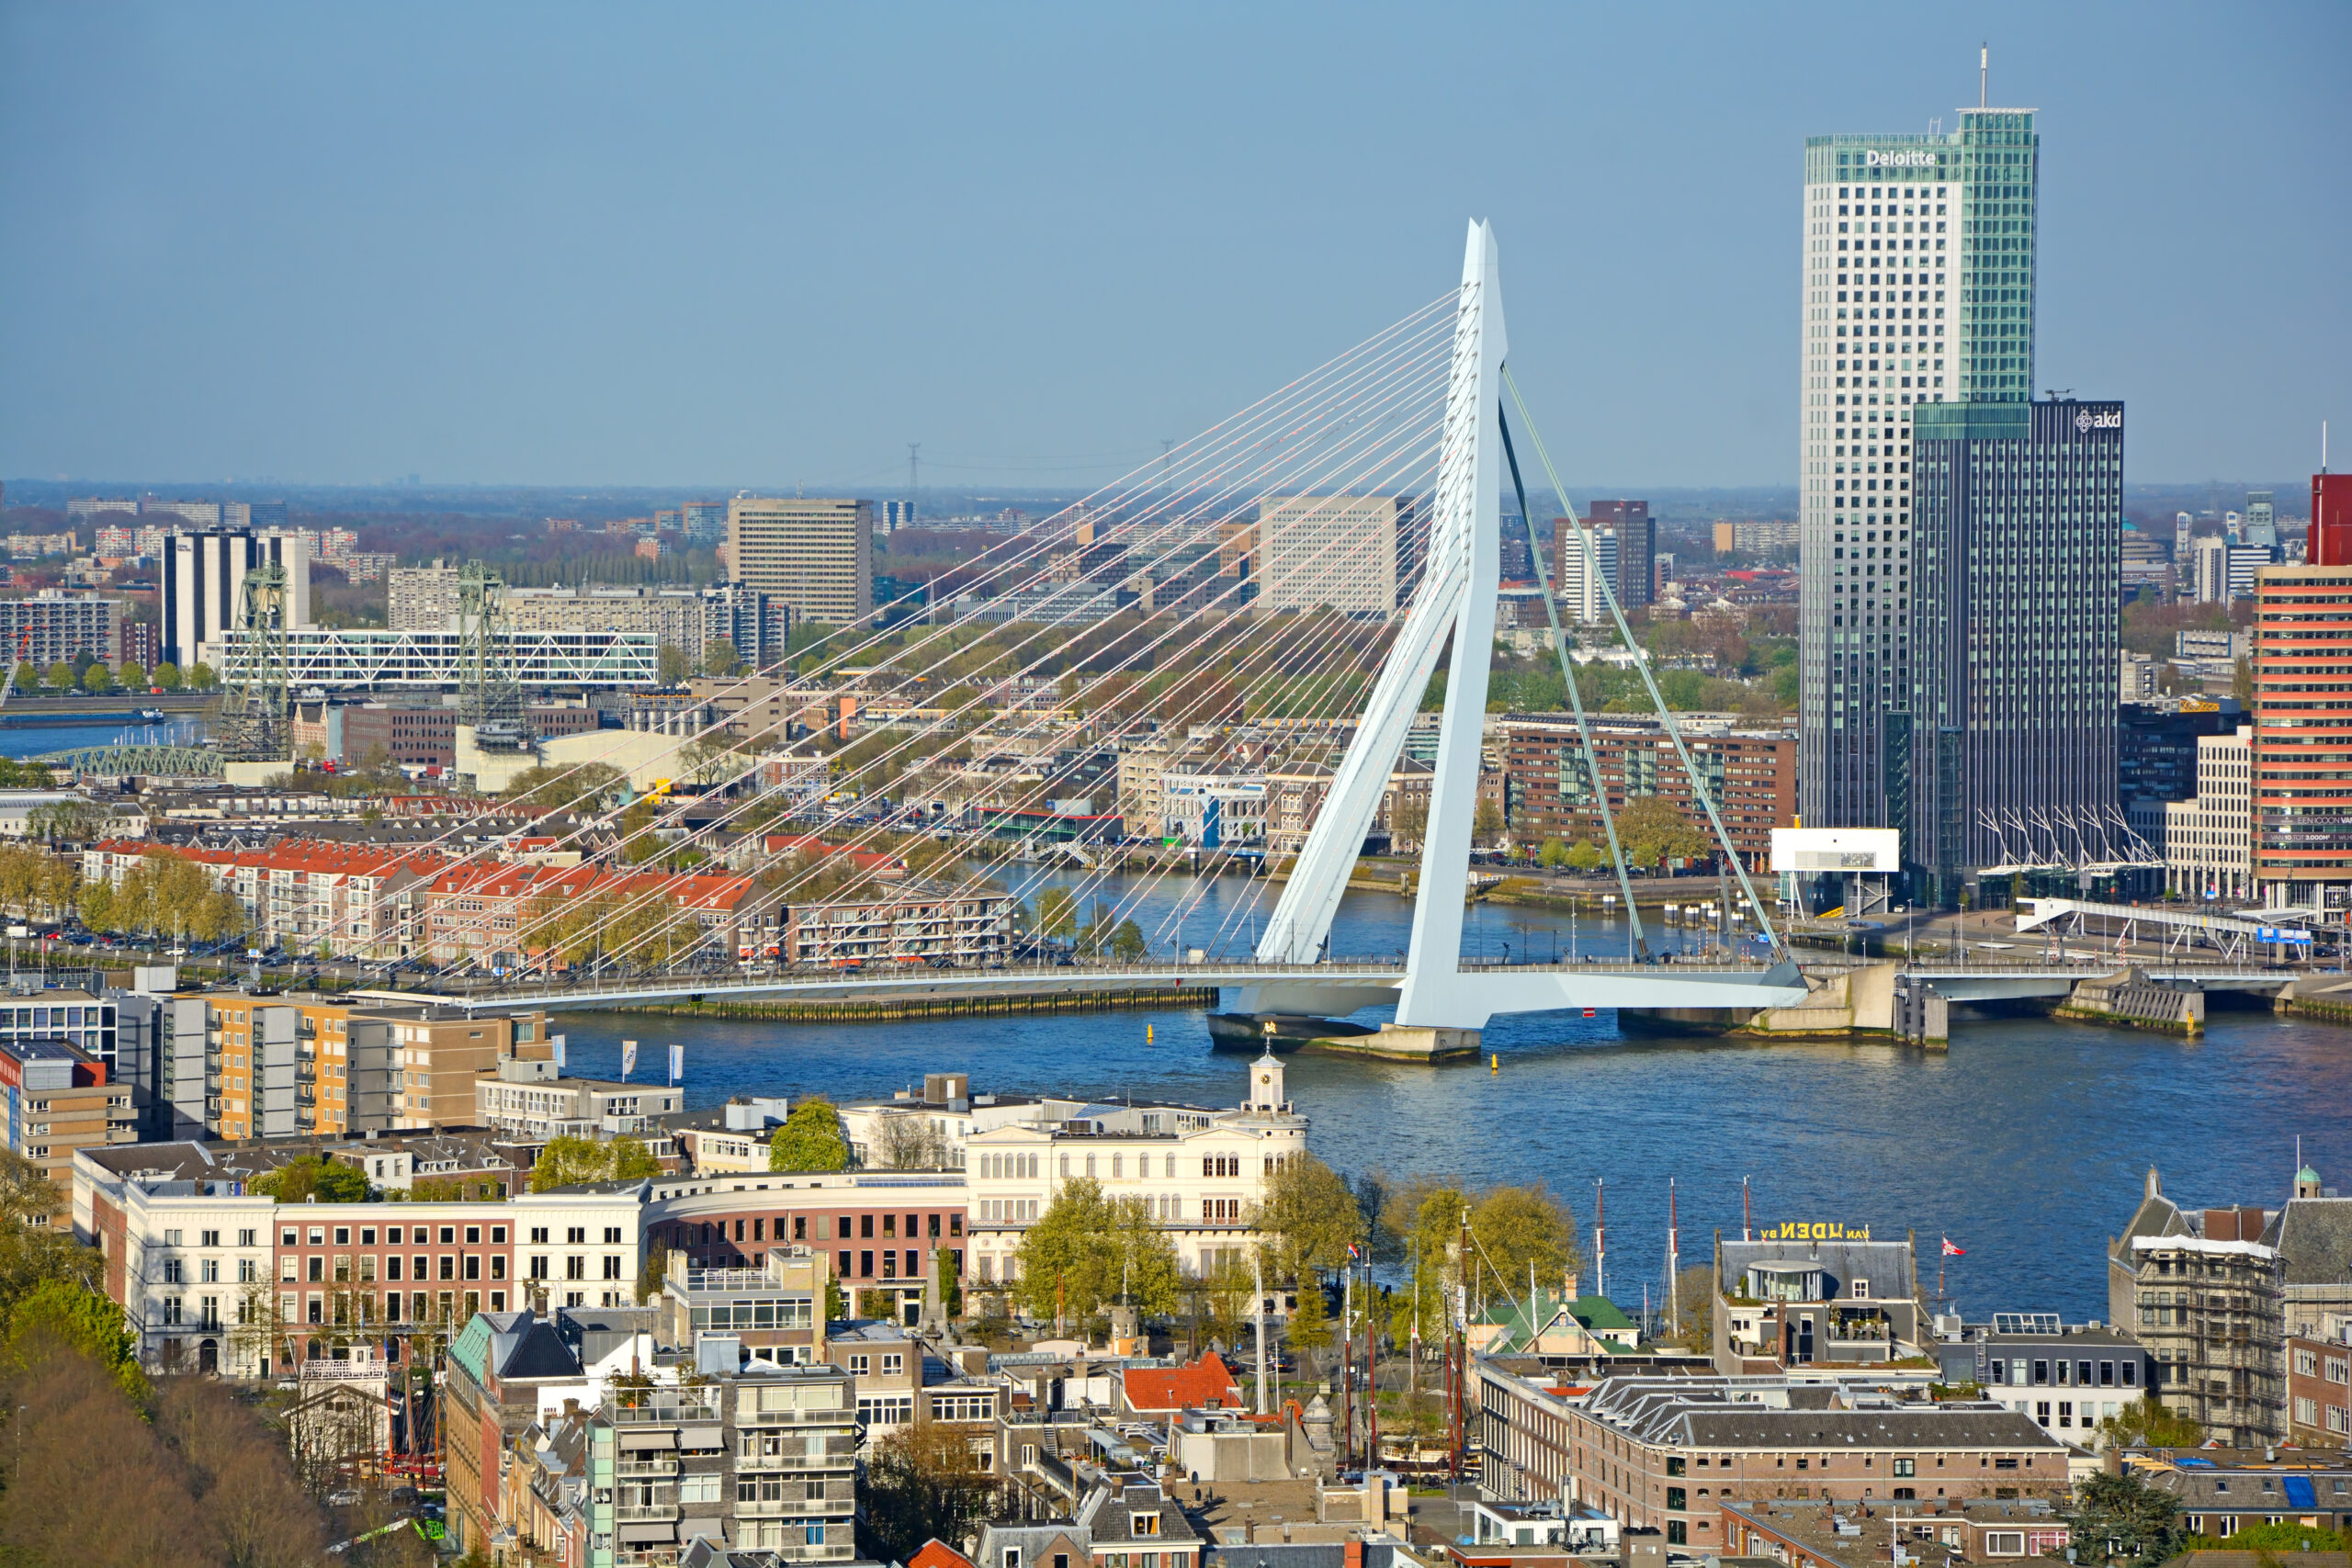 Wonen in Rotterdam vanuit een drone